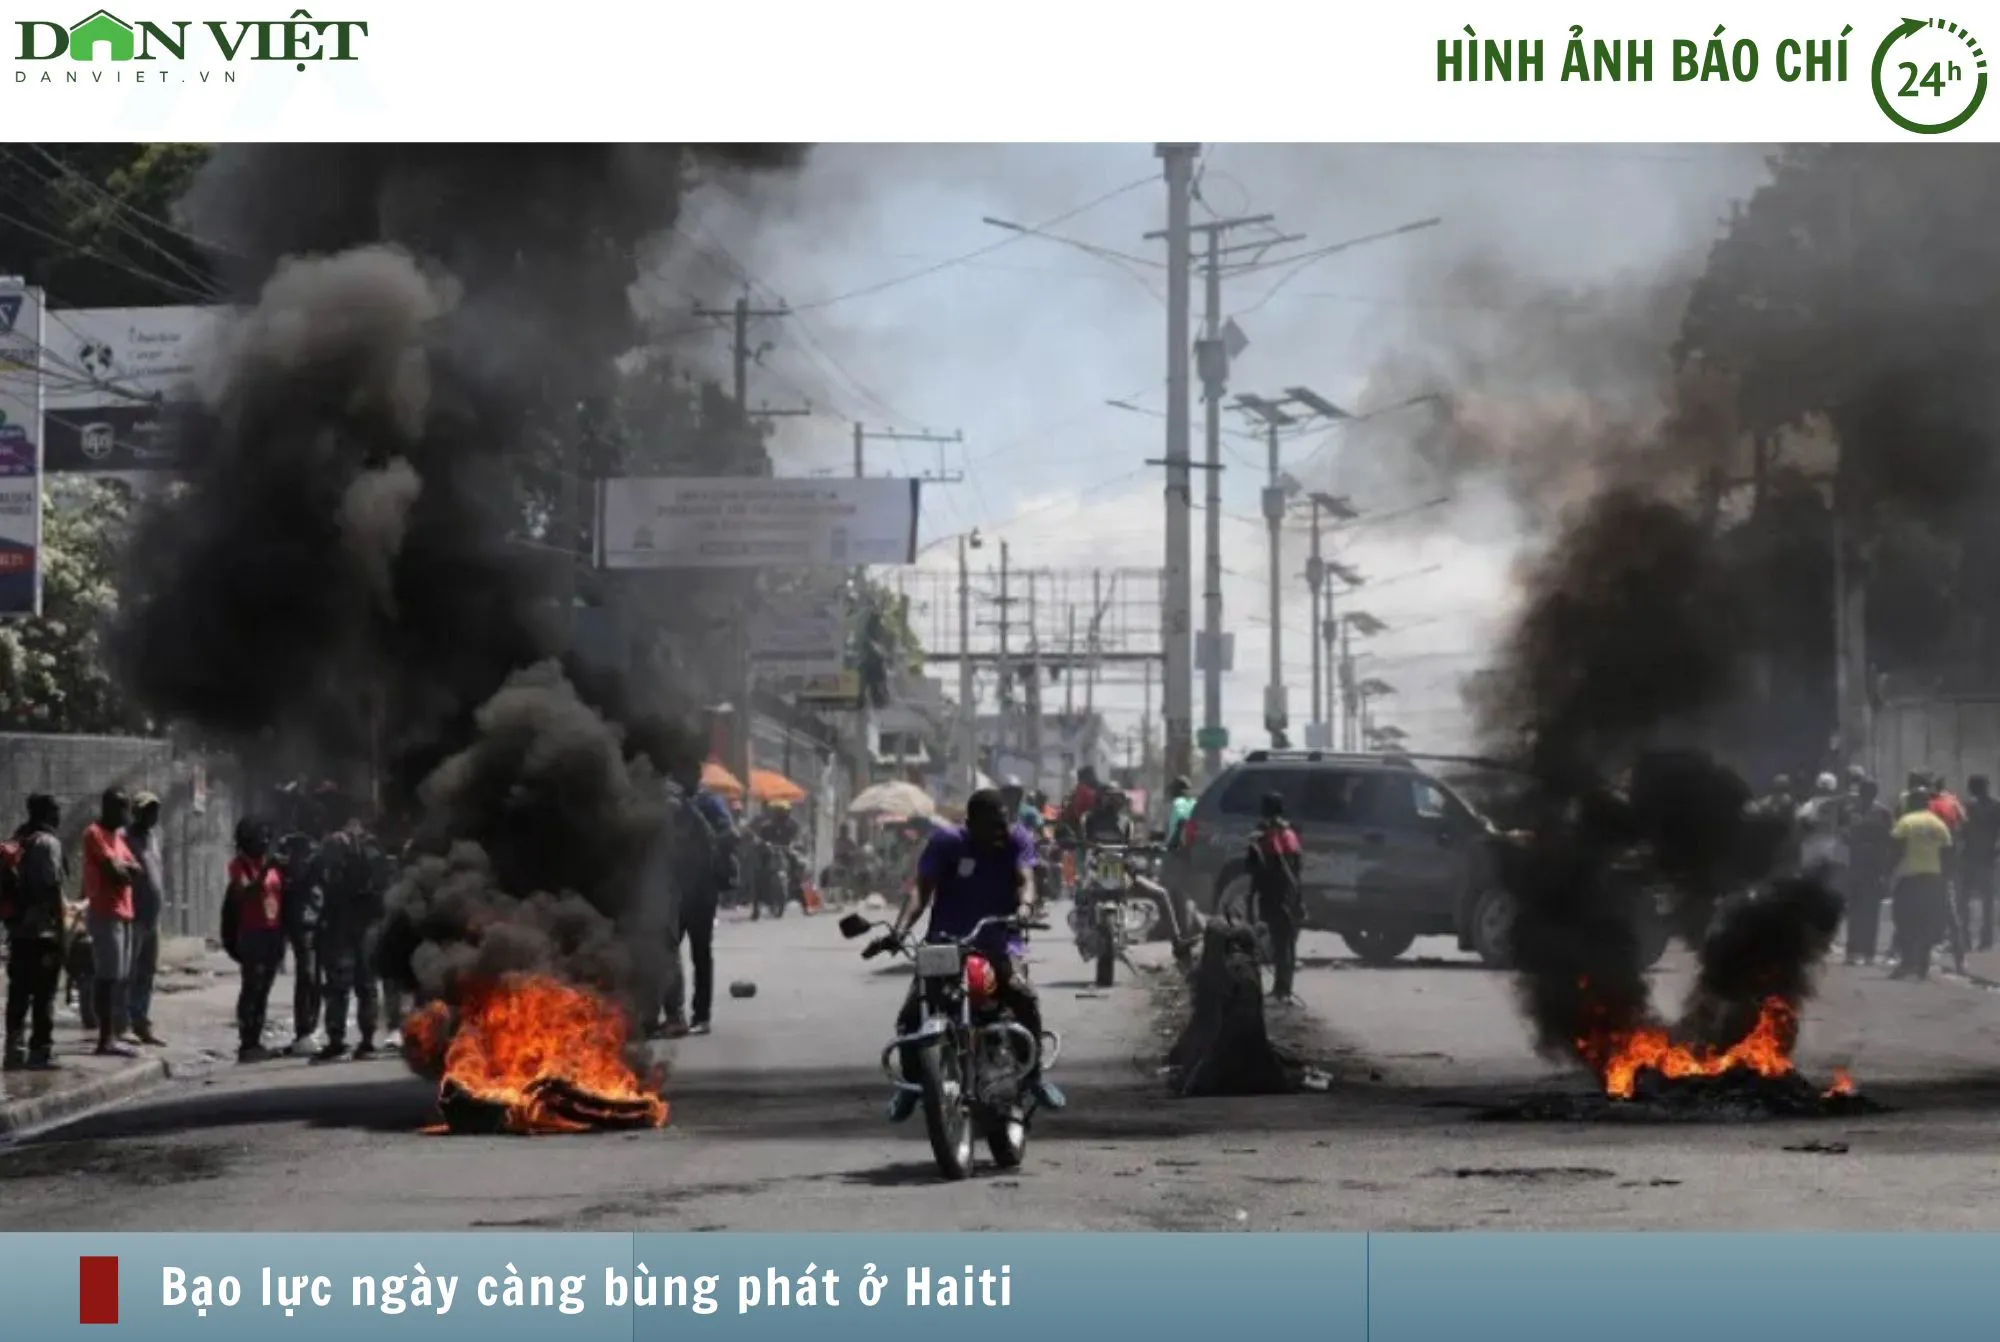 Hình ảnh báo chí 24h: Haiti vẫn chìm trong bạo lực, Mỹ khẩn cấp di tản công dân bằng trực thăng- Ảnh 1.